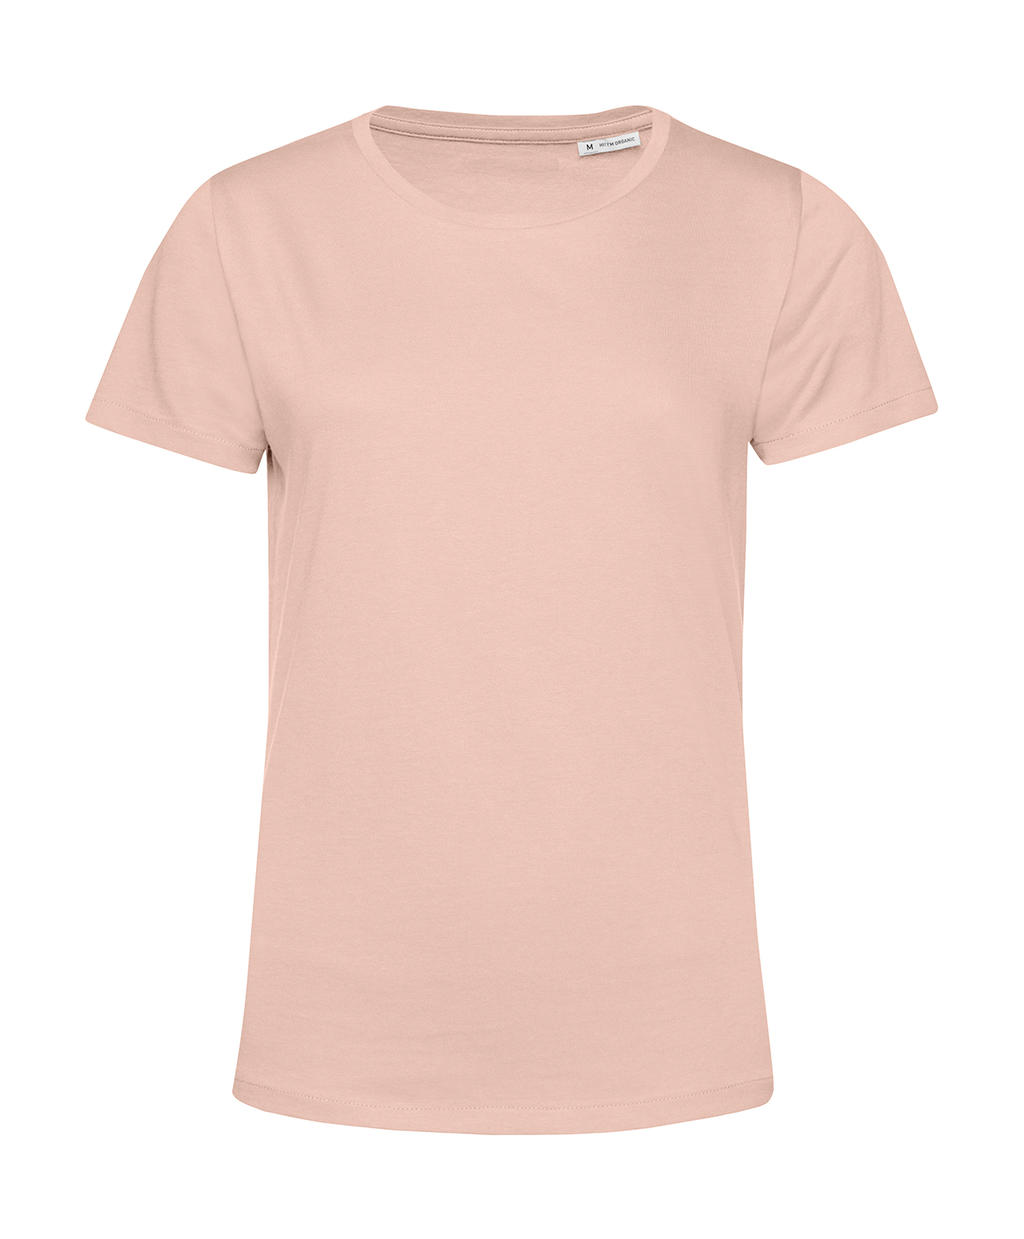 Tričko dámské BC Organic Inspire E150 - světle růžové, XS